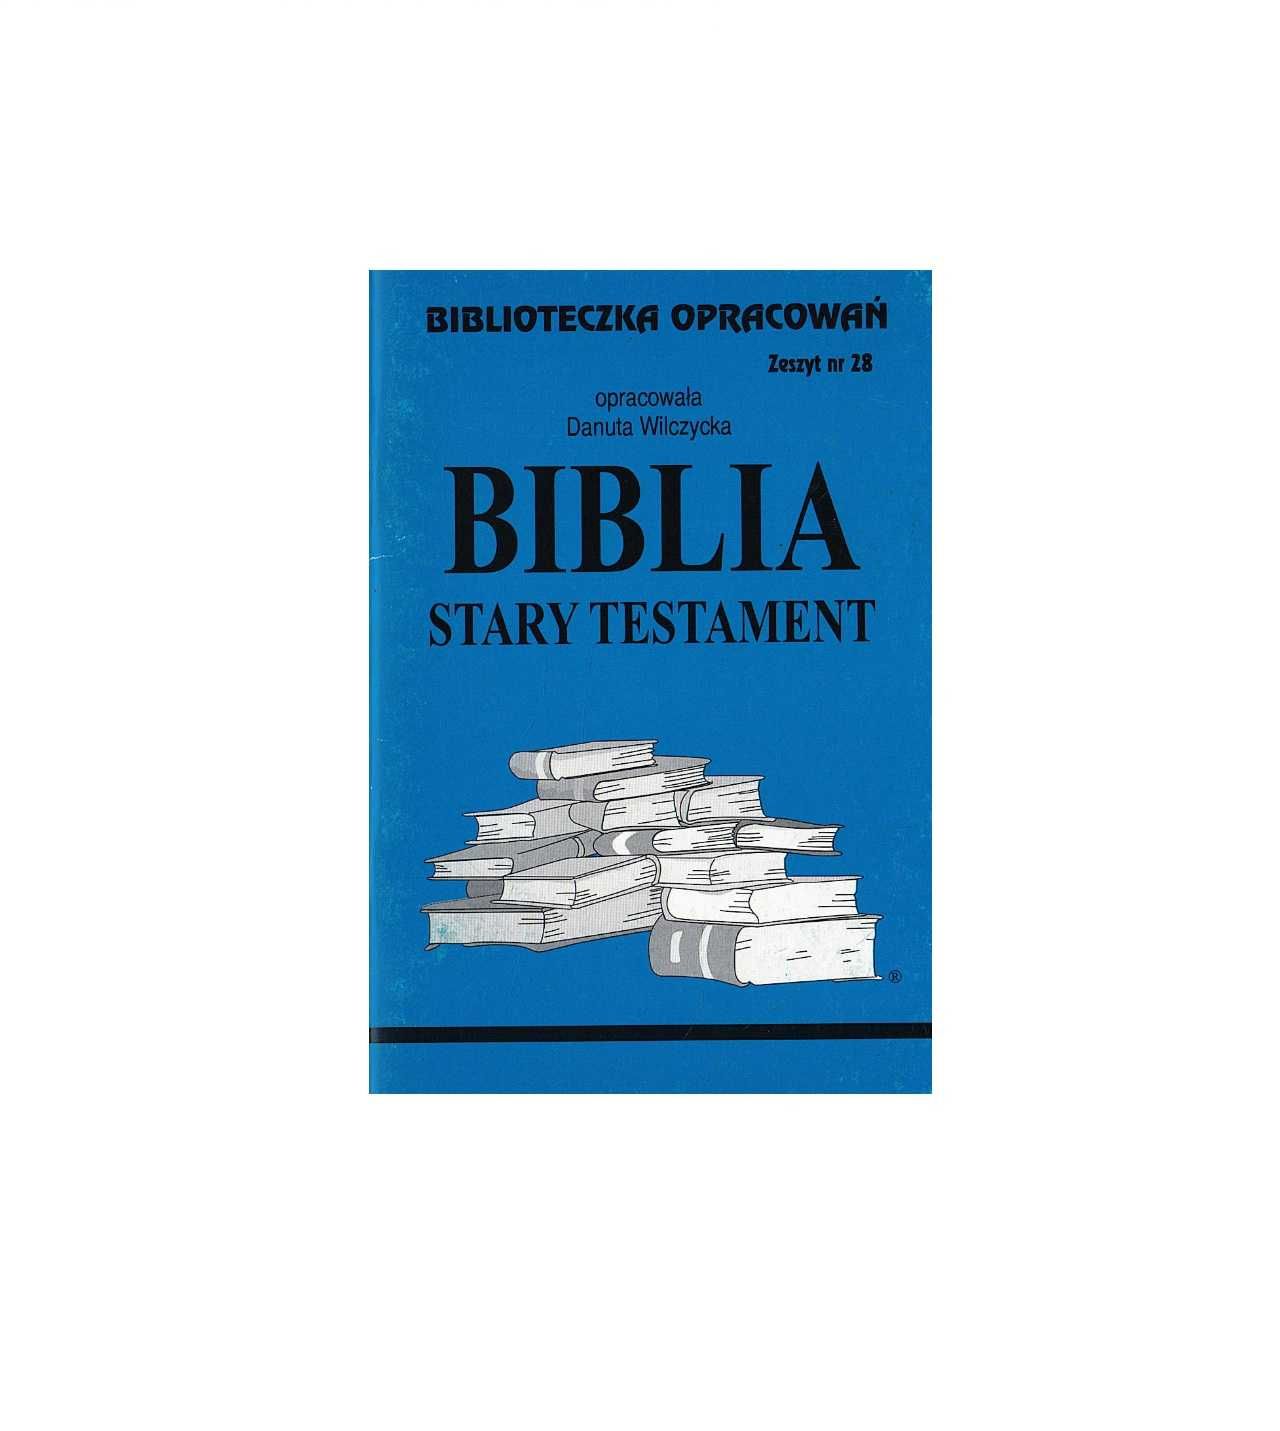 Biblioteczka opracowań Biblia: Stary testament - Danuta Wilczycka